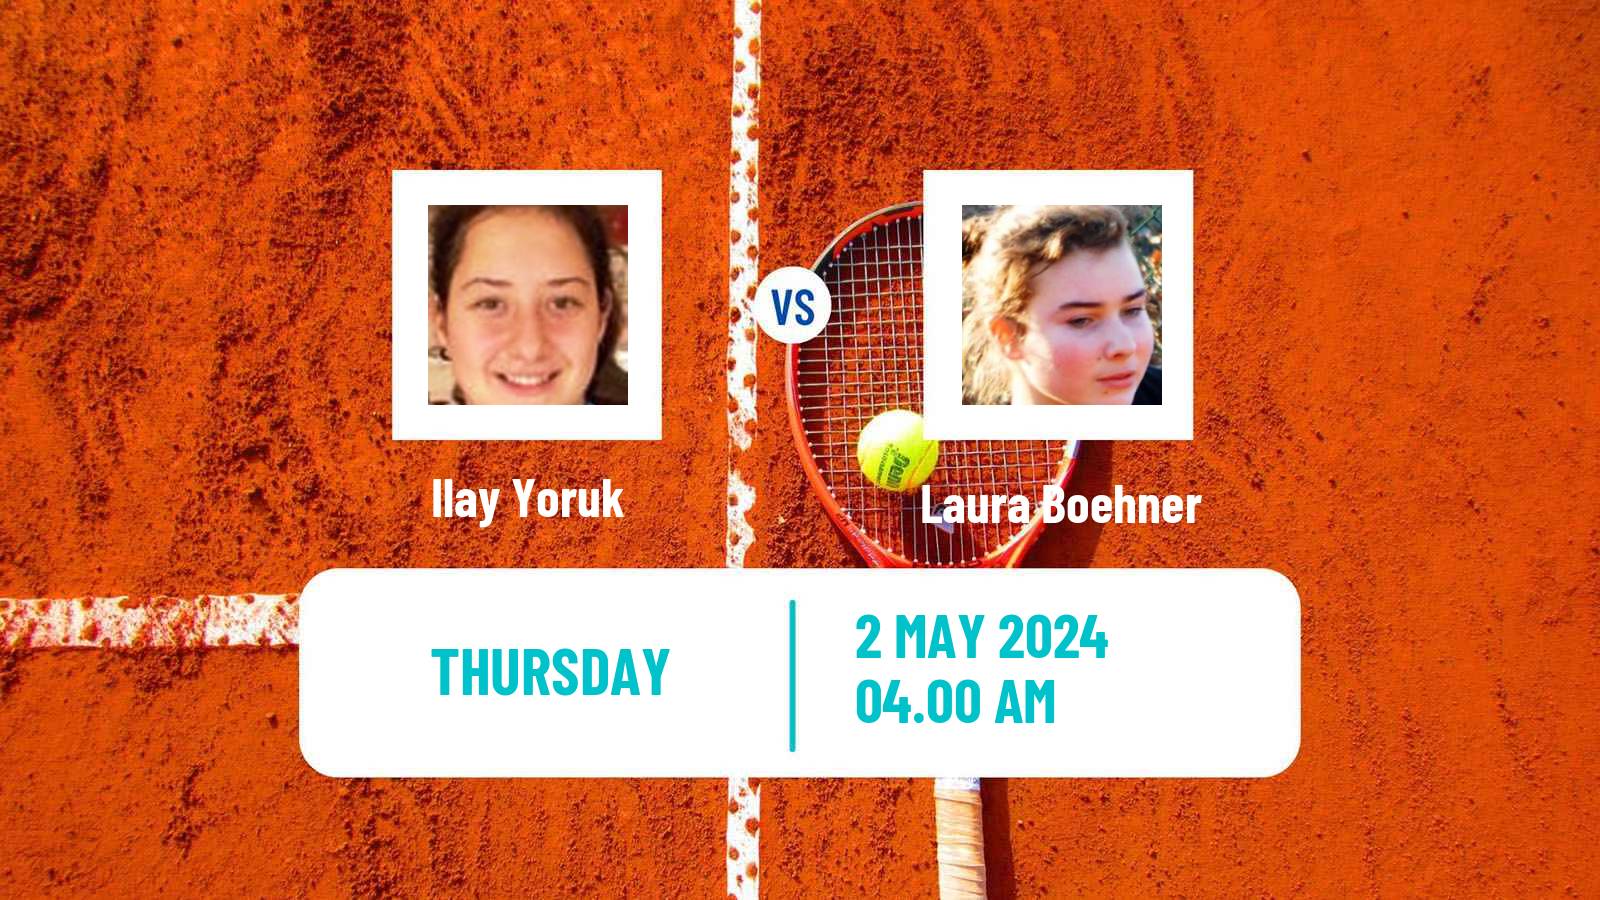 Tennis ITF W15 Antalya 12 Women Ilay Yoruk - Laura Boehner